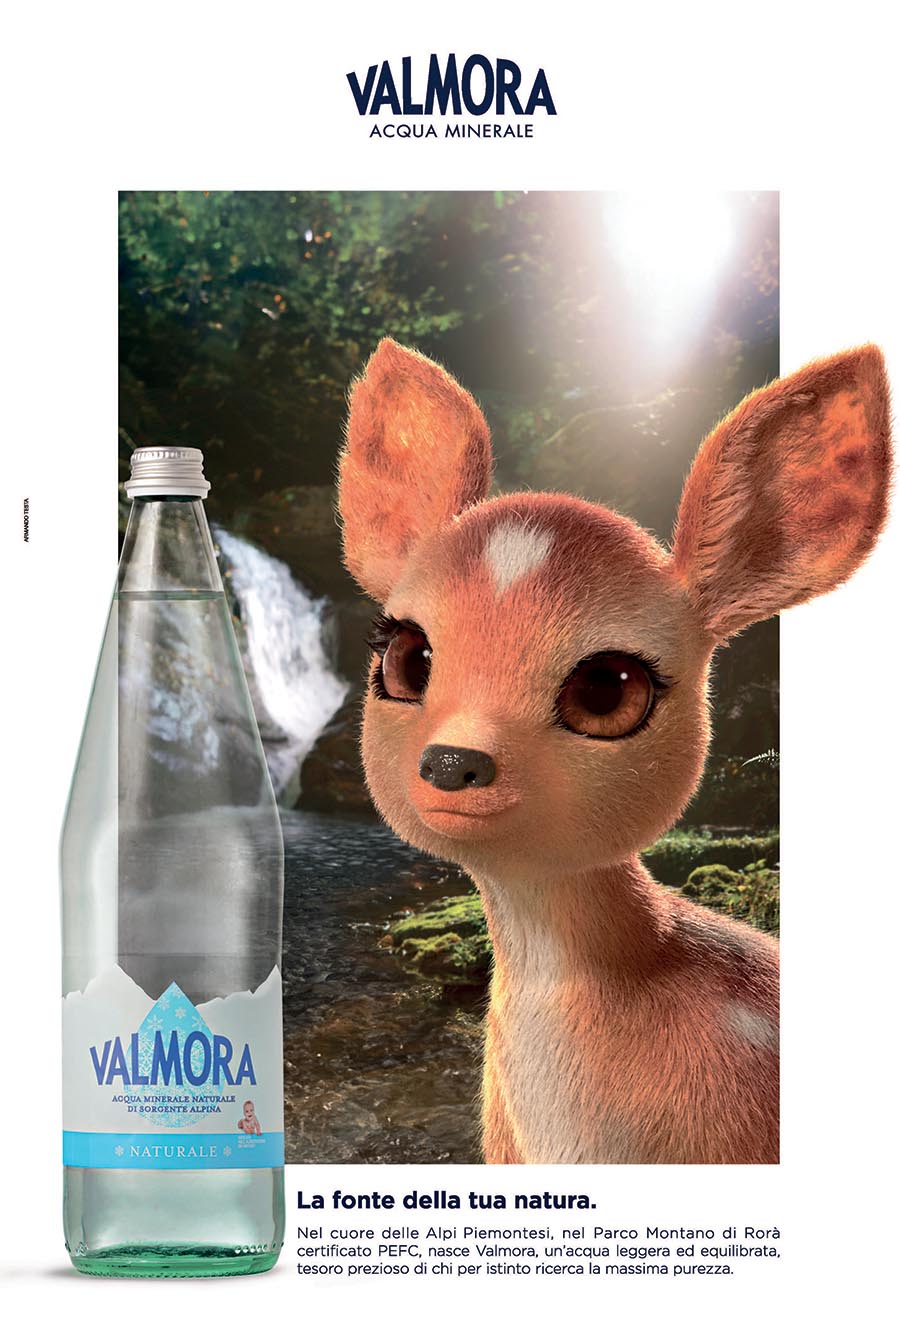 Acqua Valmora sceglie Armando Testa per la nuova pubblicità